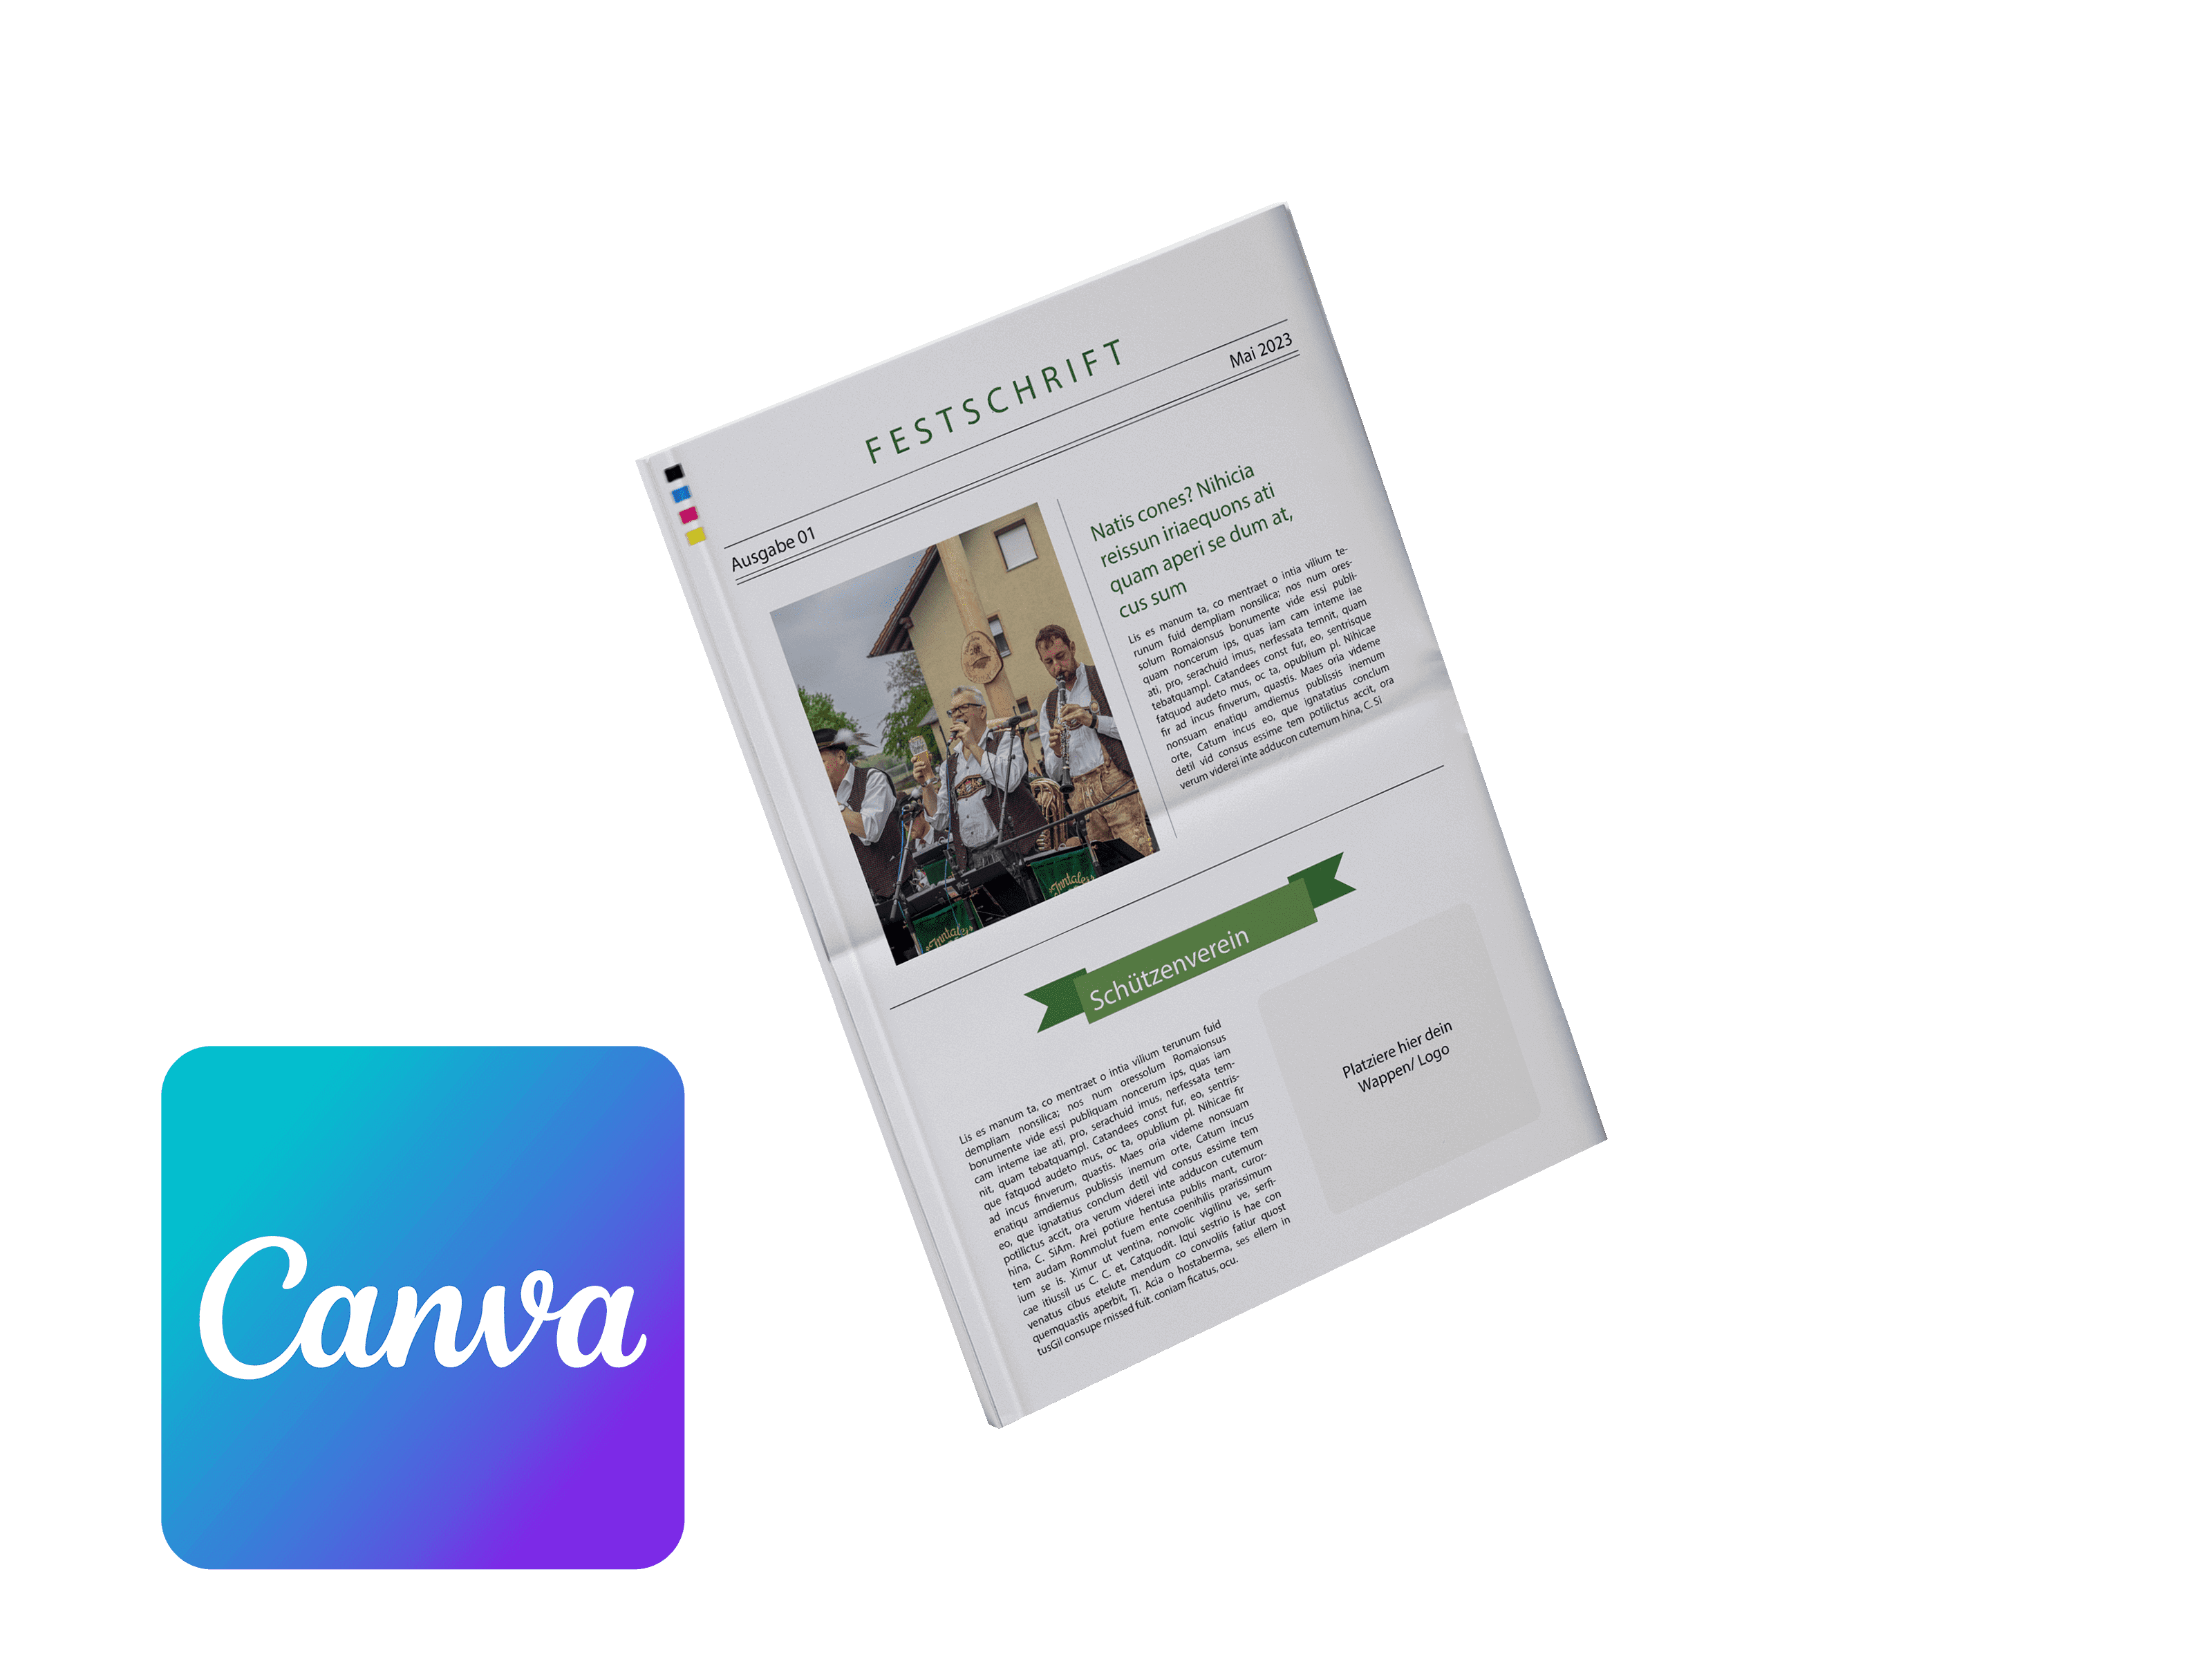 Vereinszeitung für Schützenverein online mit Canva gestalten